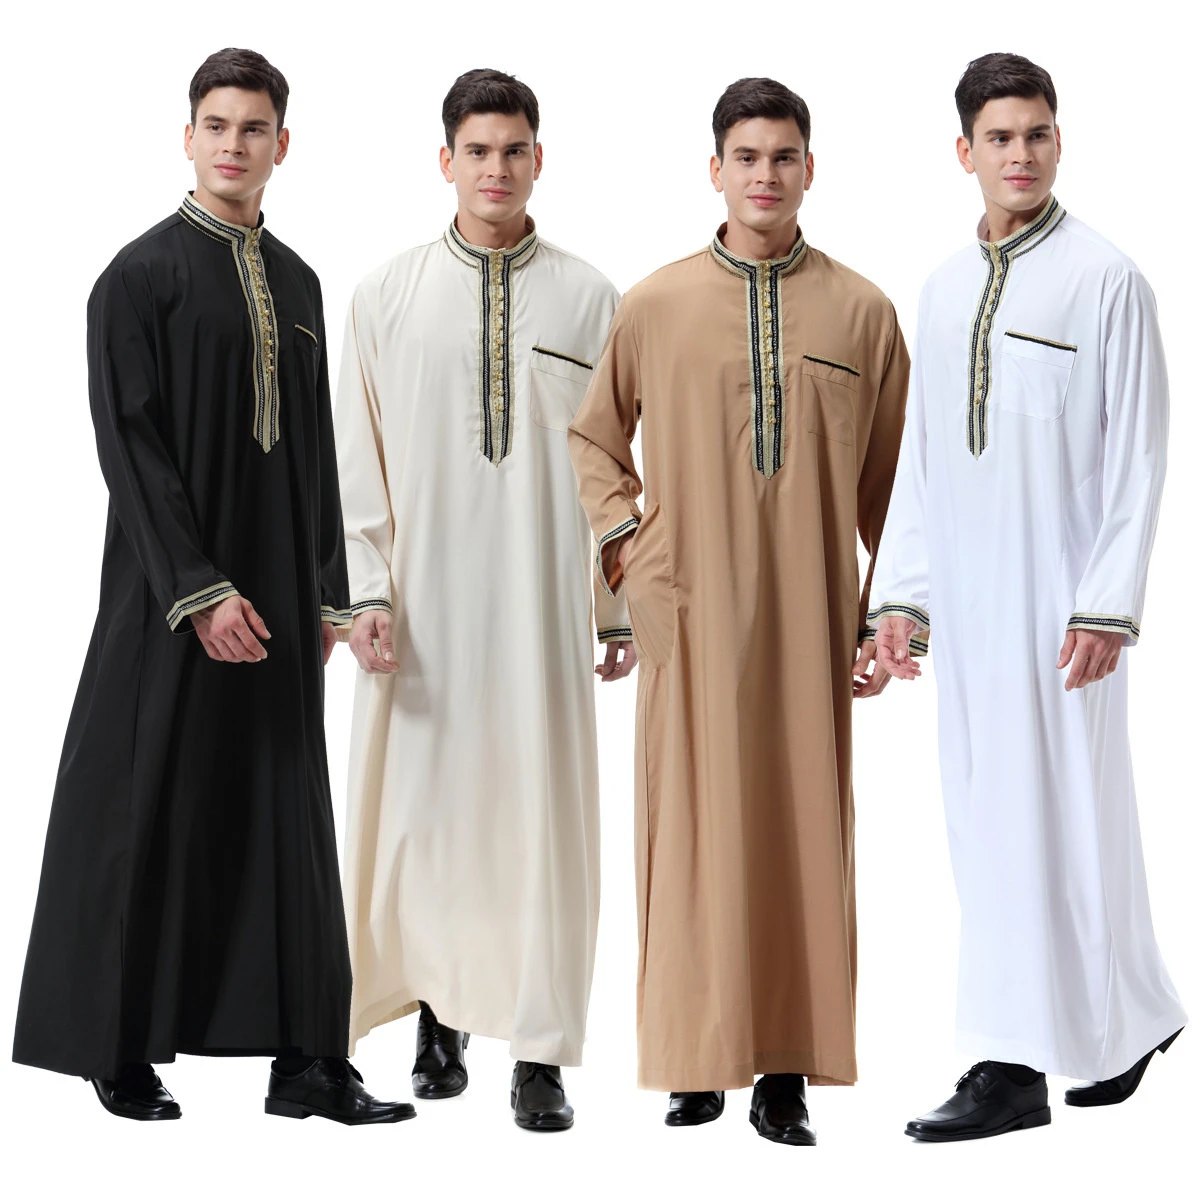 gebaar medaillewinnaar backup Nieuwe Moslim Marokkaanse Lange Mouwen Islamitische Mannen Mode Effen Kleur  Gewaad Arabische Kaftan Saudi Dubai Kleding Mannen Aanbidding  Abaya|Islamitische Kleding| - AliExpress